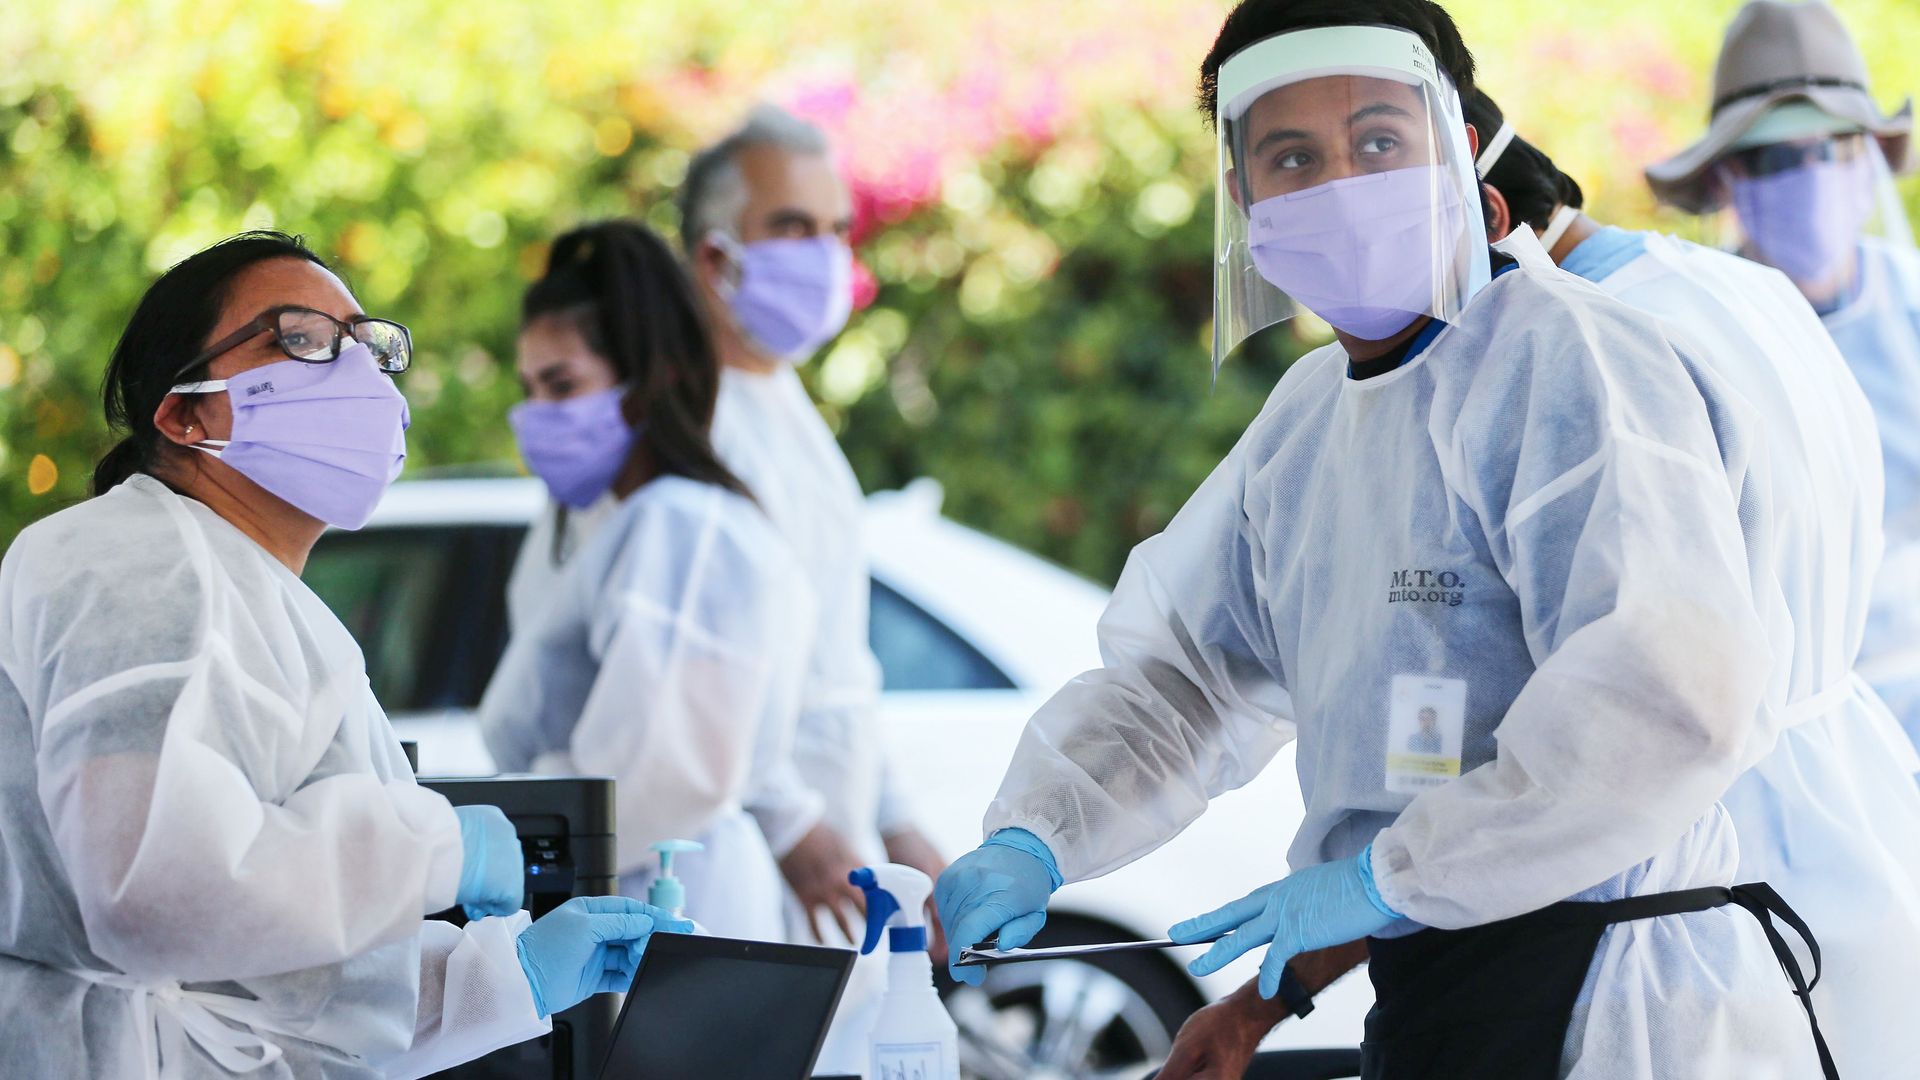 Healthcare workers handling coronavirus tests in Los Angeles on August 11.